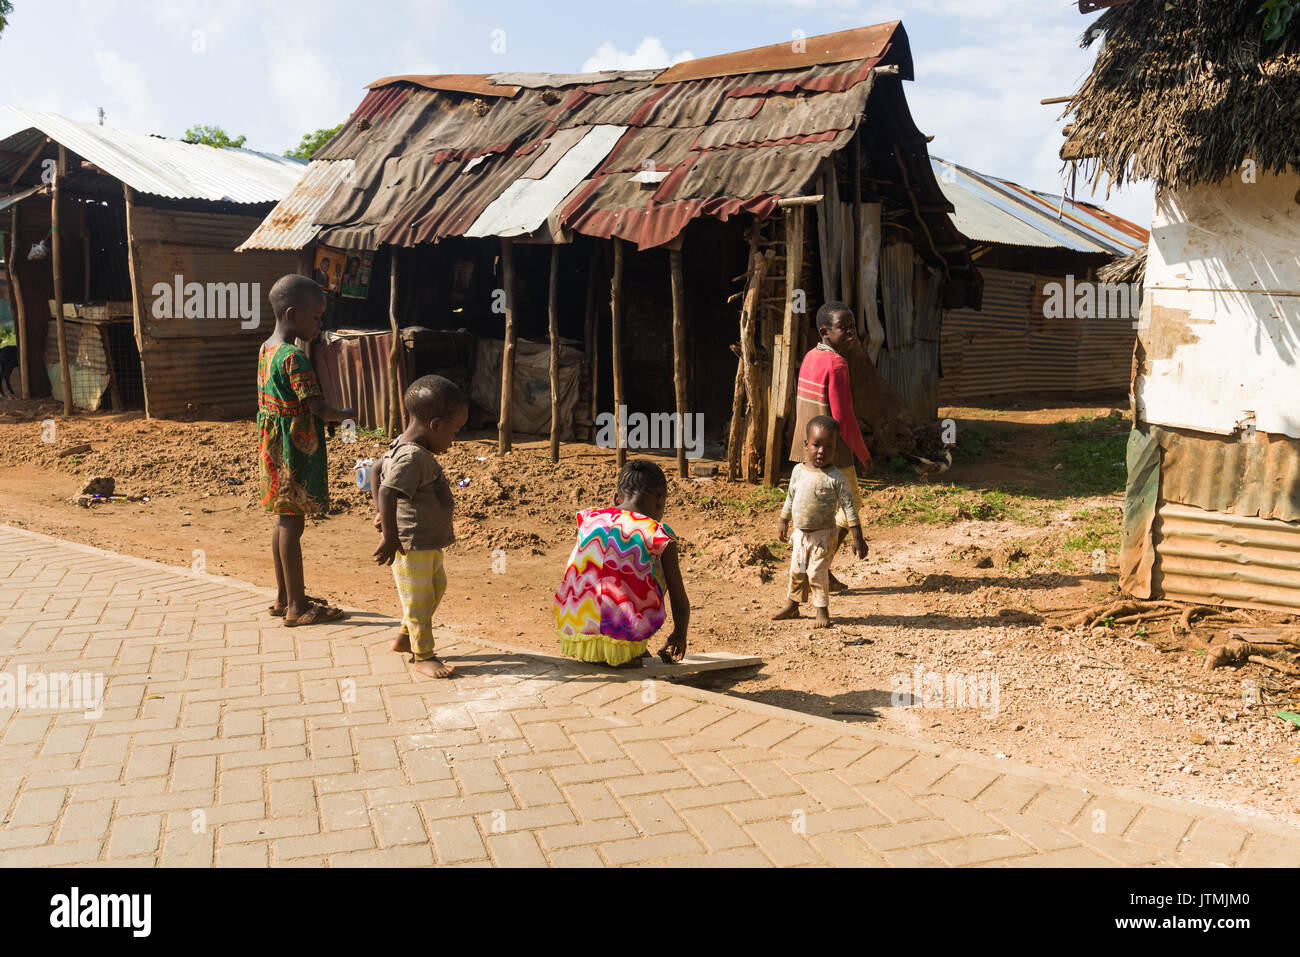 Wellblech und Holz- shack Gebäude mit kleinen Kindern spielen im Freien, Kenia Stockfoto